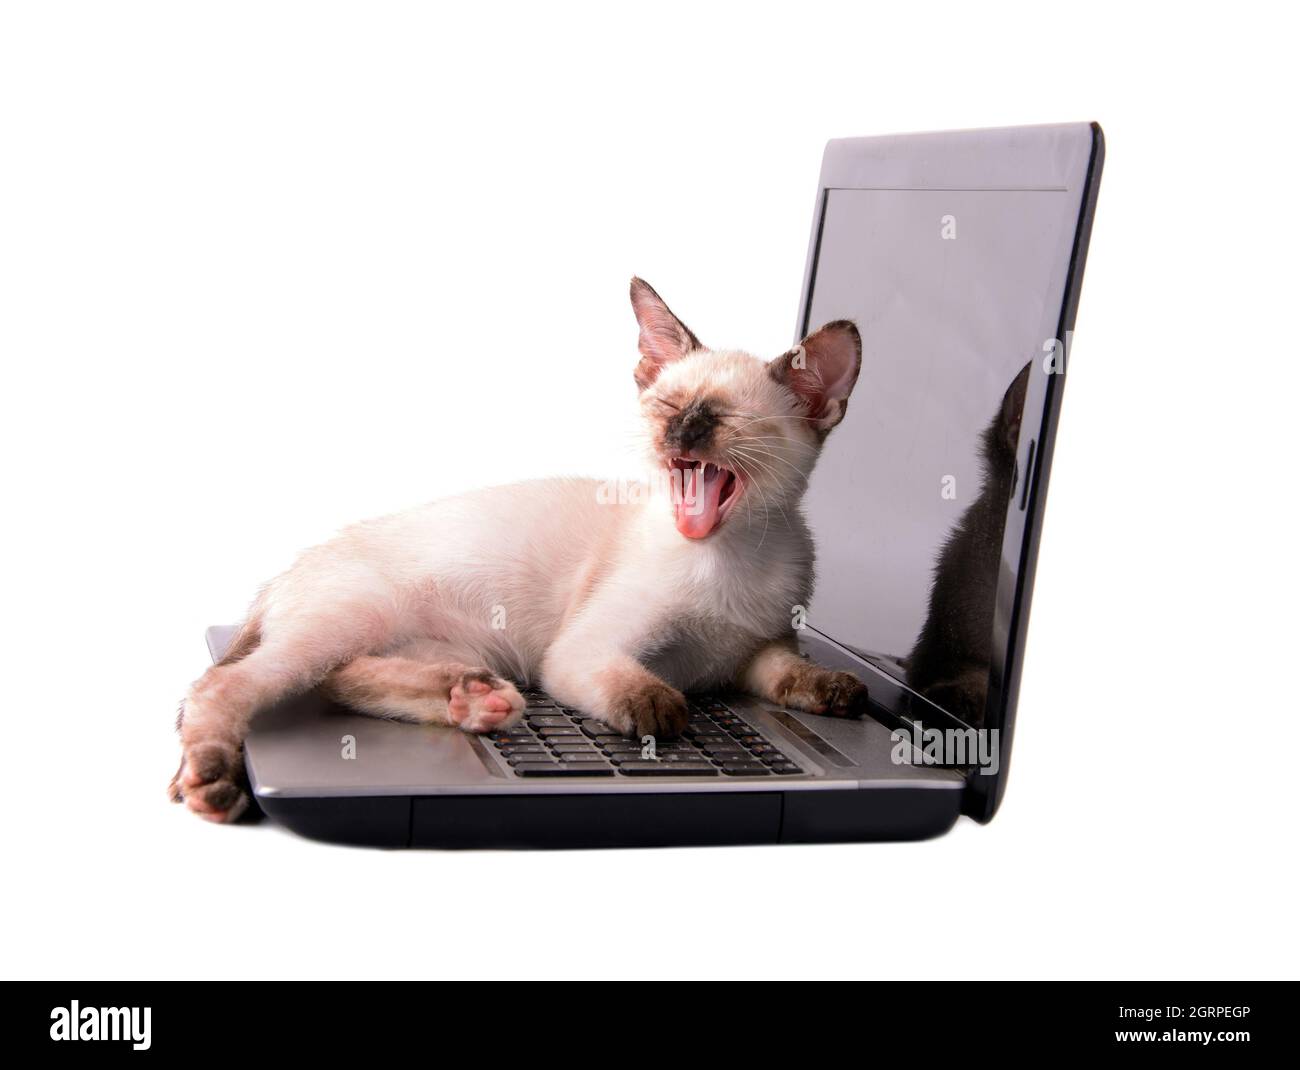 Giovane tortie siamese punta il gattino yawning sopra la tastiera di un computer portatile, su bianco; concetto di stanco mentre lavora duro Foto Stock